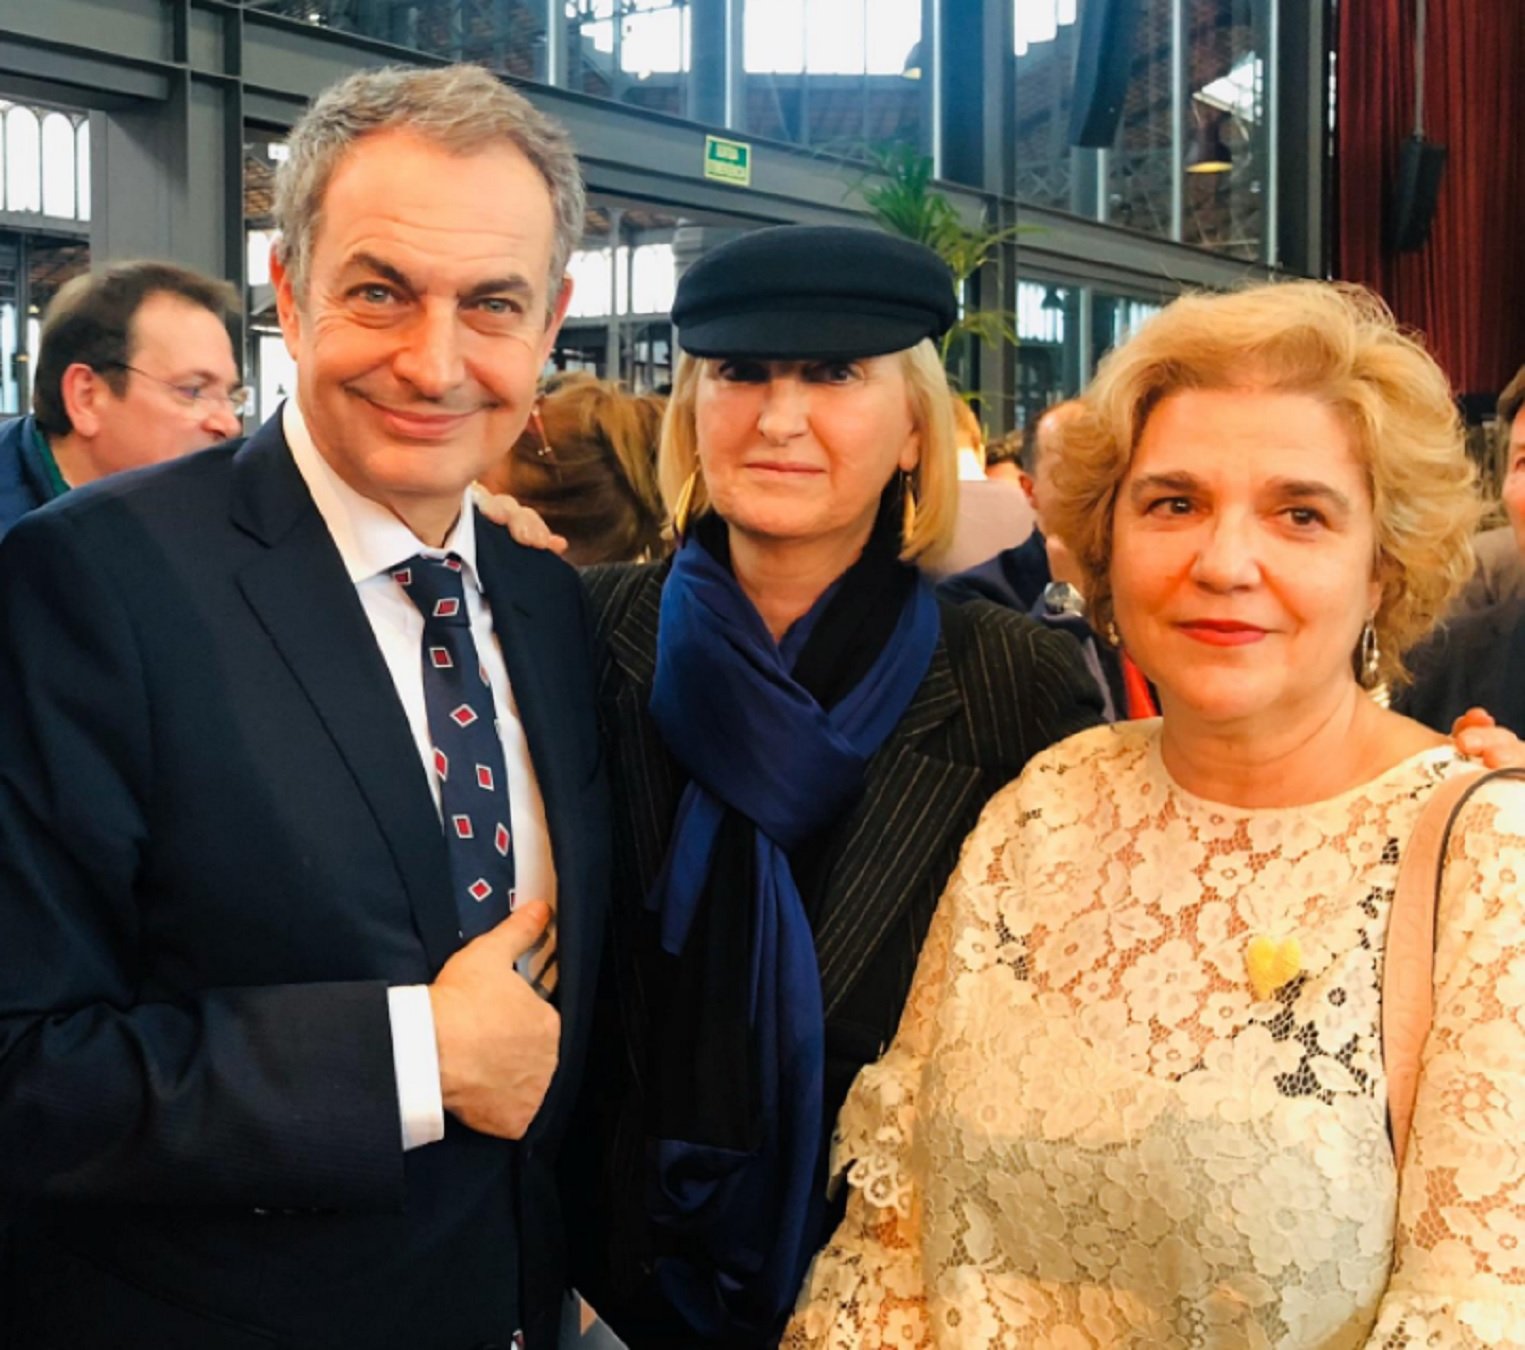 La tensa conversa entre Pilar Rahola i Zapatero al Born per com tracten Catalunya